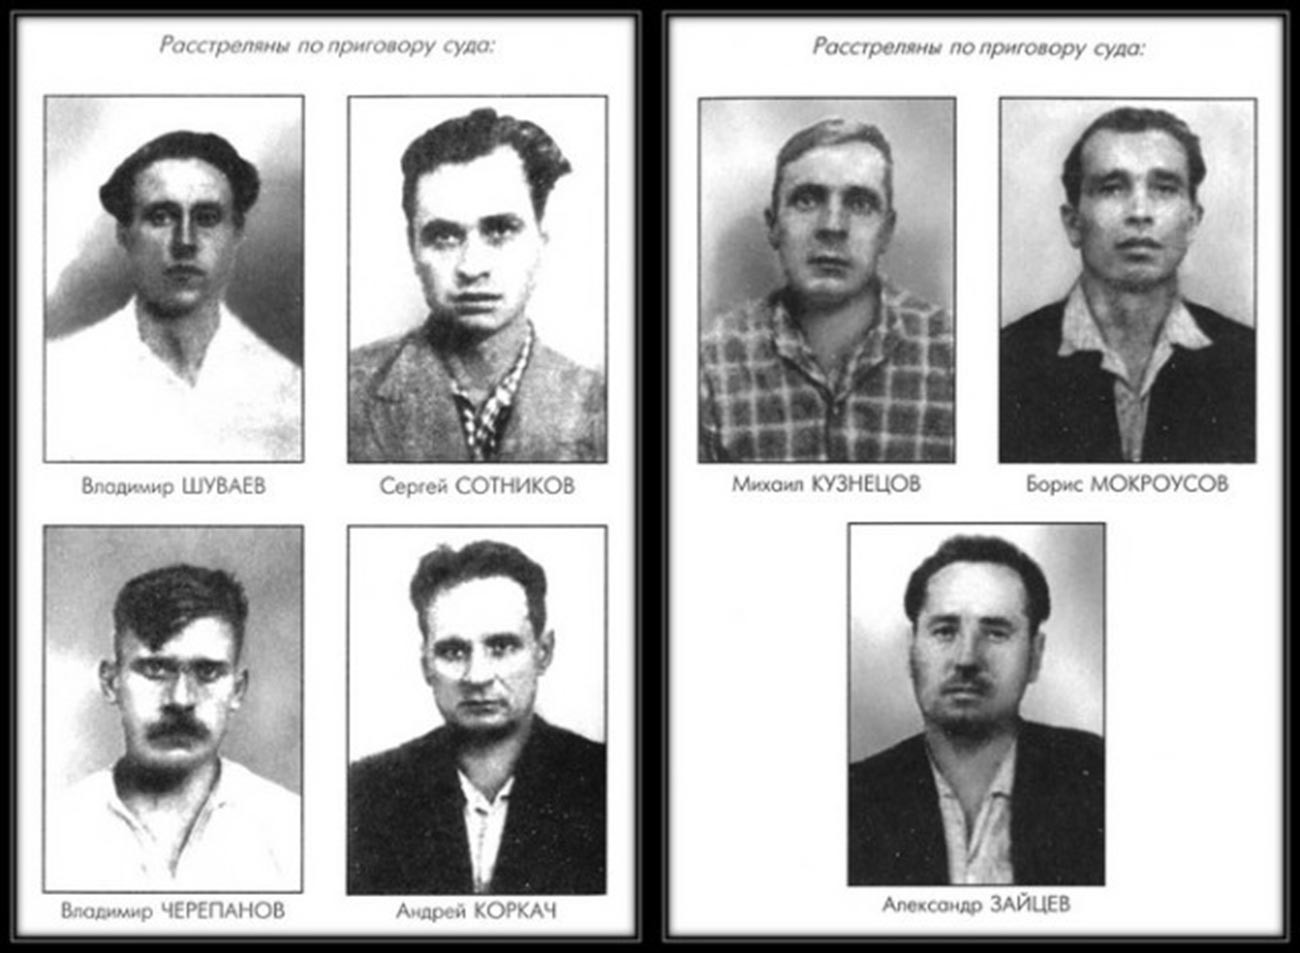 銃殺刑が言い渡された労働者たち：ウラジーミル・シュワエフ（1937-62）、セルゲイ・ソトニコフ（1937-62）、ミハイル・クズネツォフ（1930-62）、ボリス・モクロウソフ（1923-62）、ウラジーミル・チェレパノフ（1933-62）、アンドレイ・コルカチ（1917-62）、アレクサンドル・ザイツェフ（1927-62）